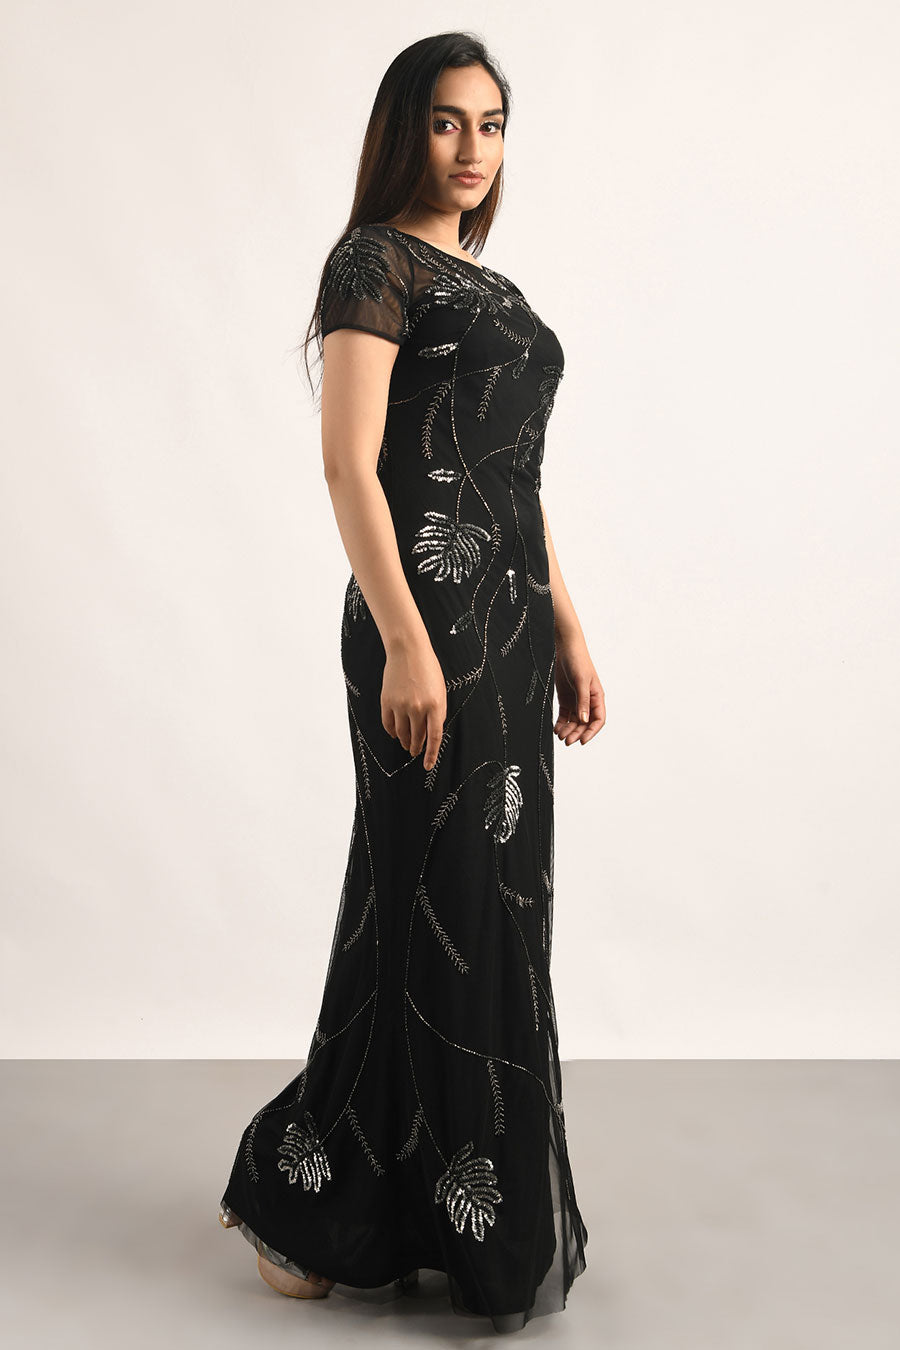 Black Embellished Gown Dress